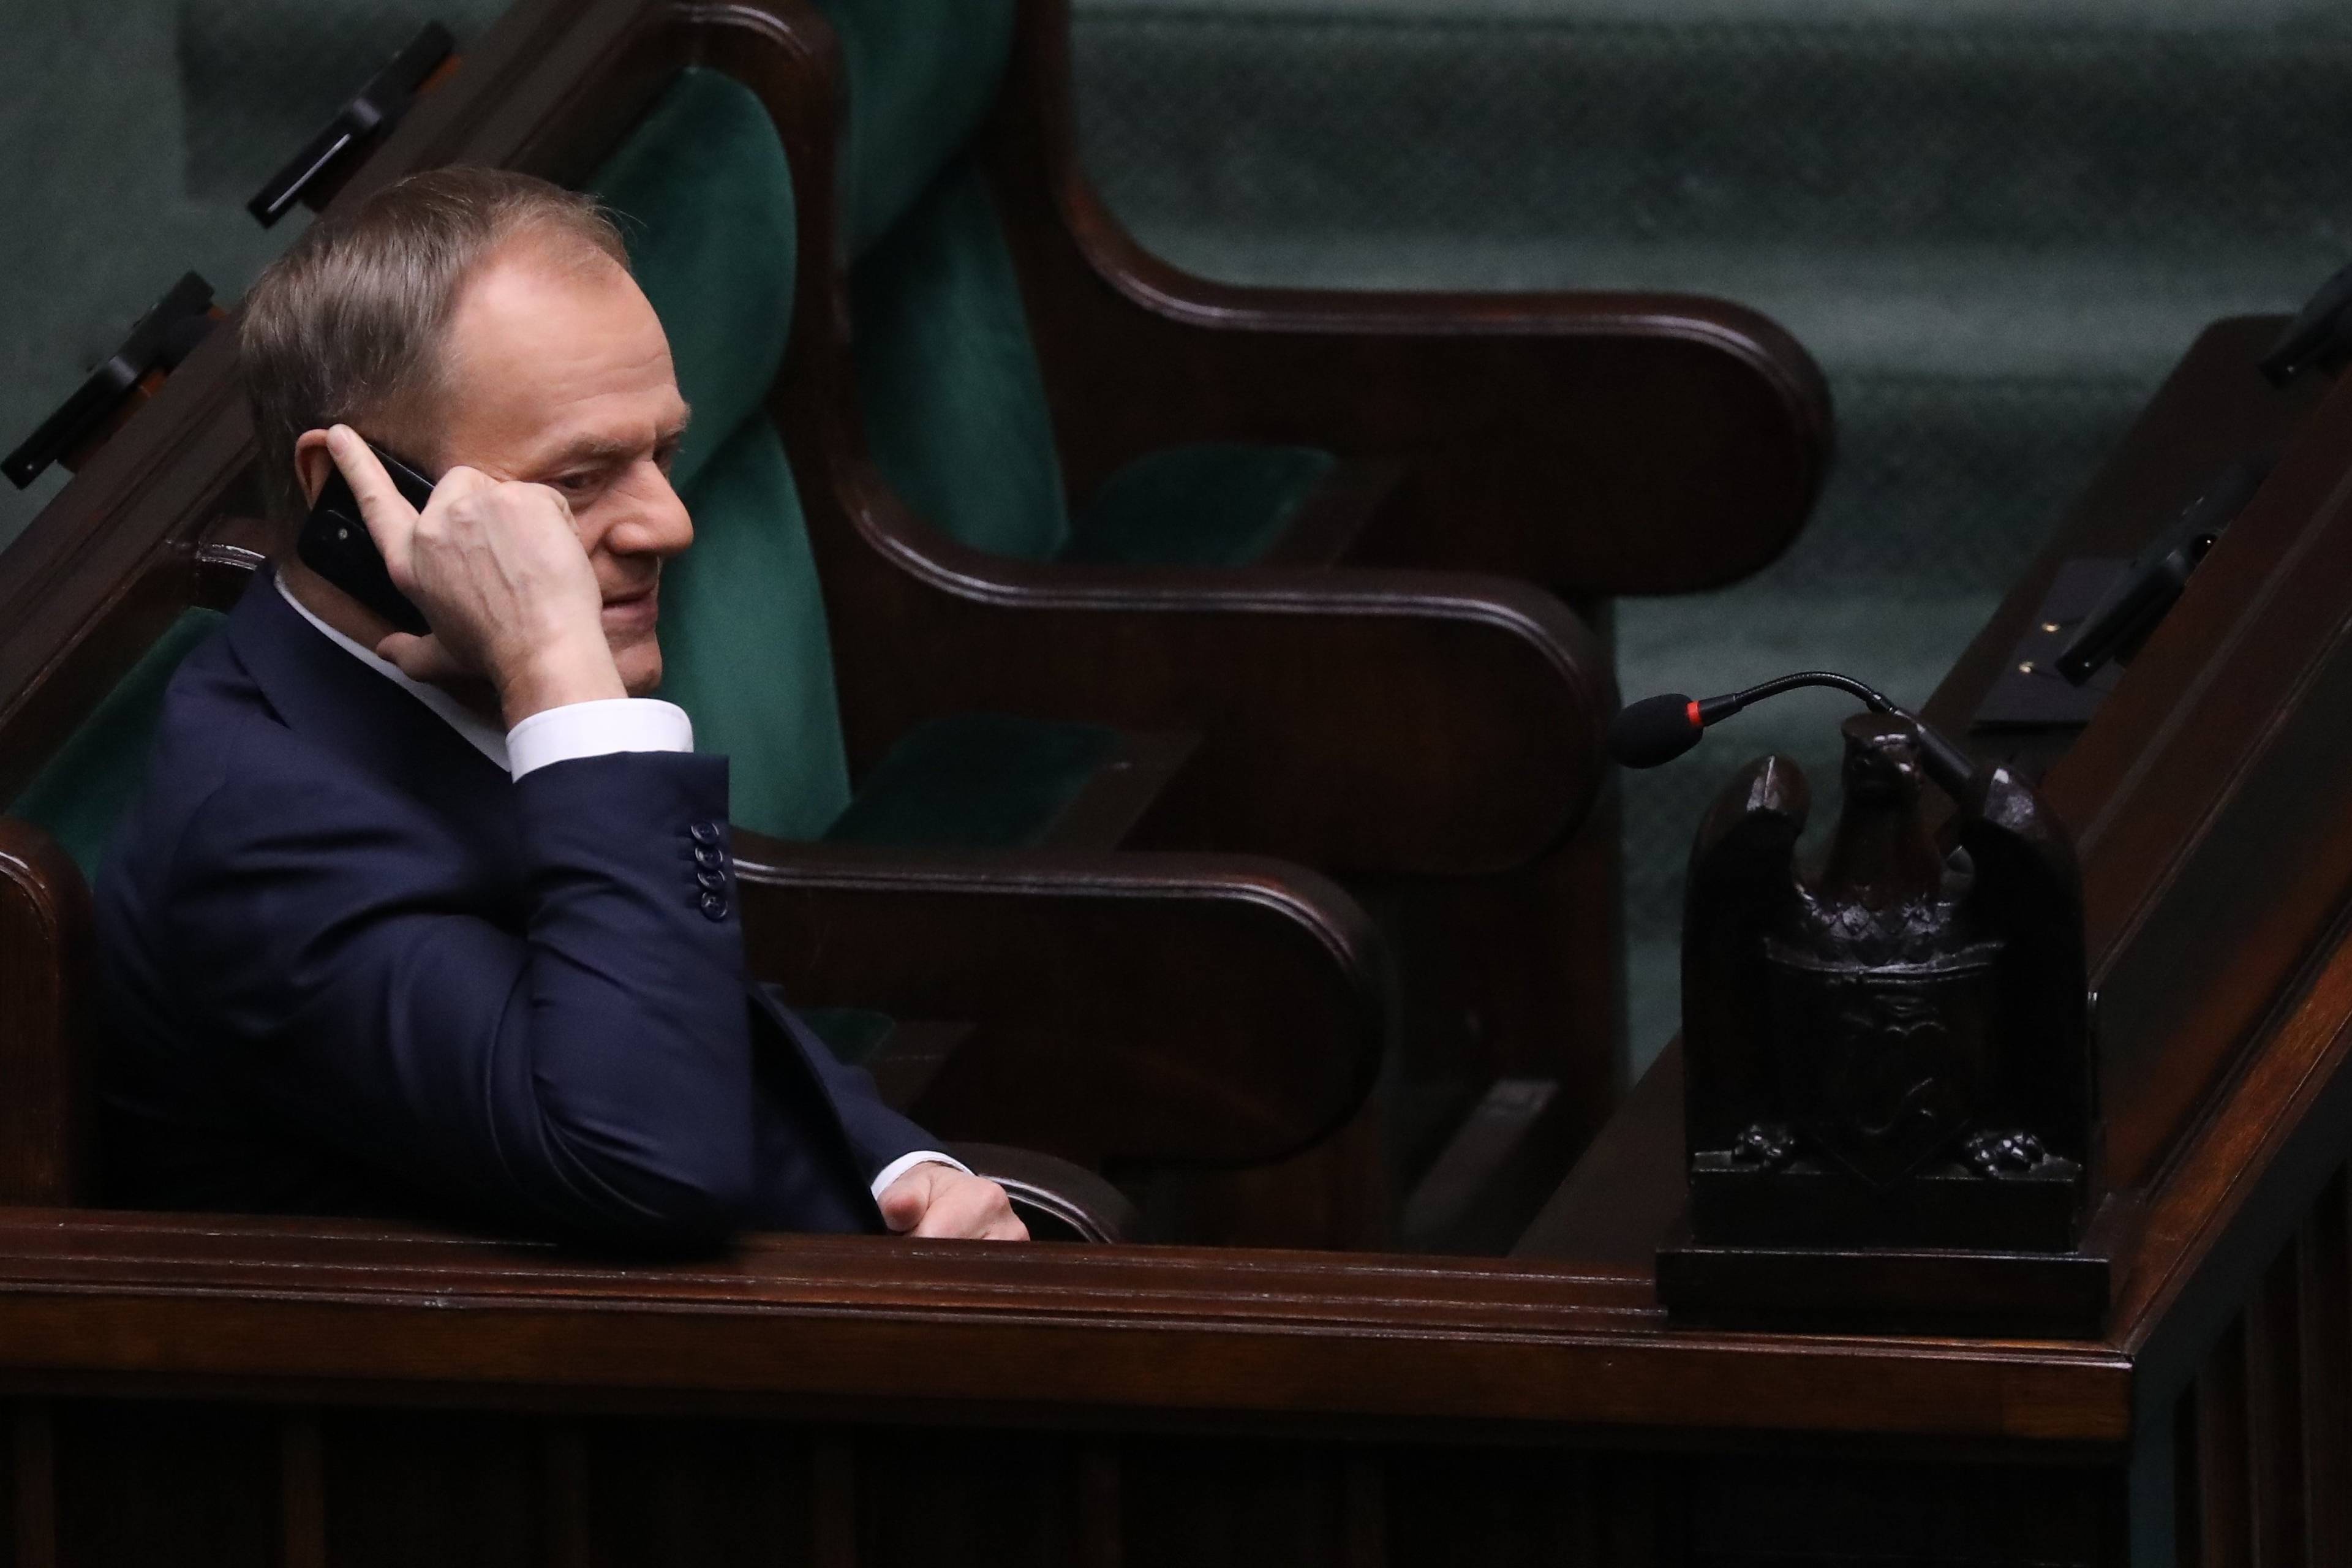 Mężczyzna w ławach rządowych w Sejmie, trzyma telefon komórkowy przy uchu. Donald Tusk, sondaż Ipsos